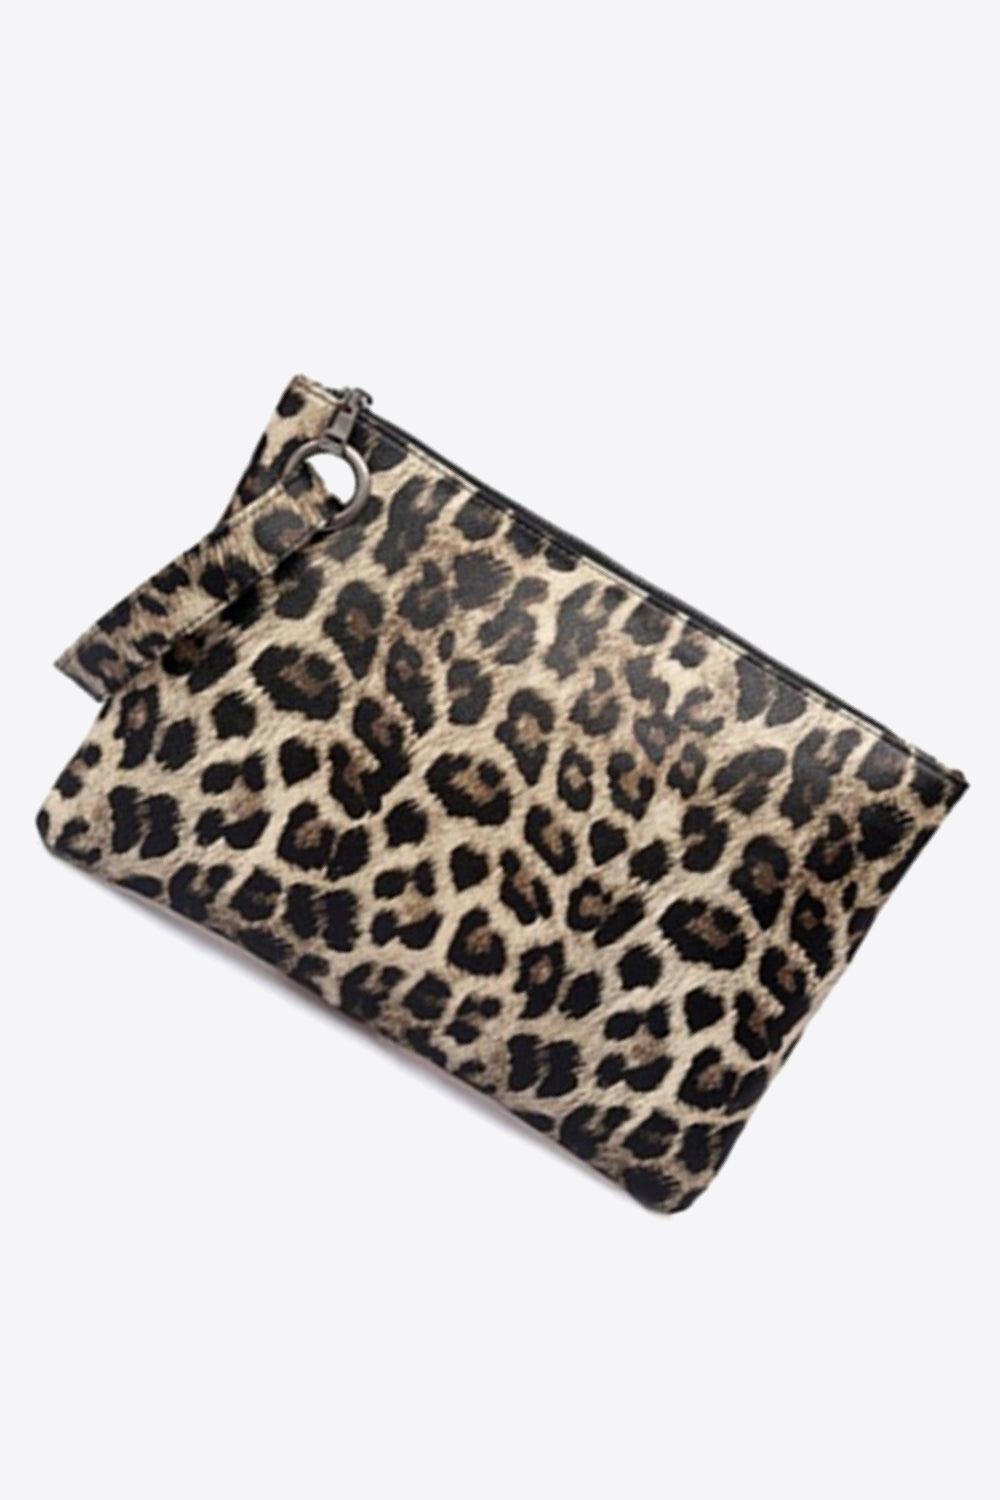 Leopard PU Leather Clutch - Flyclothing LLC